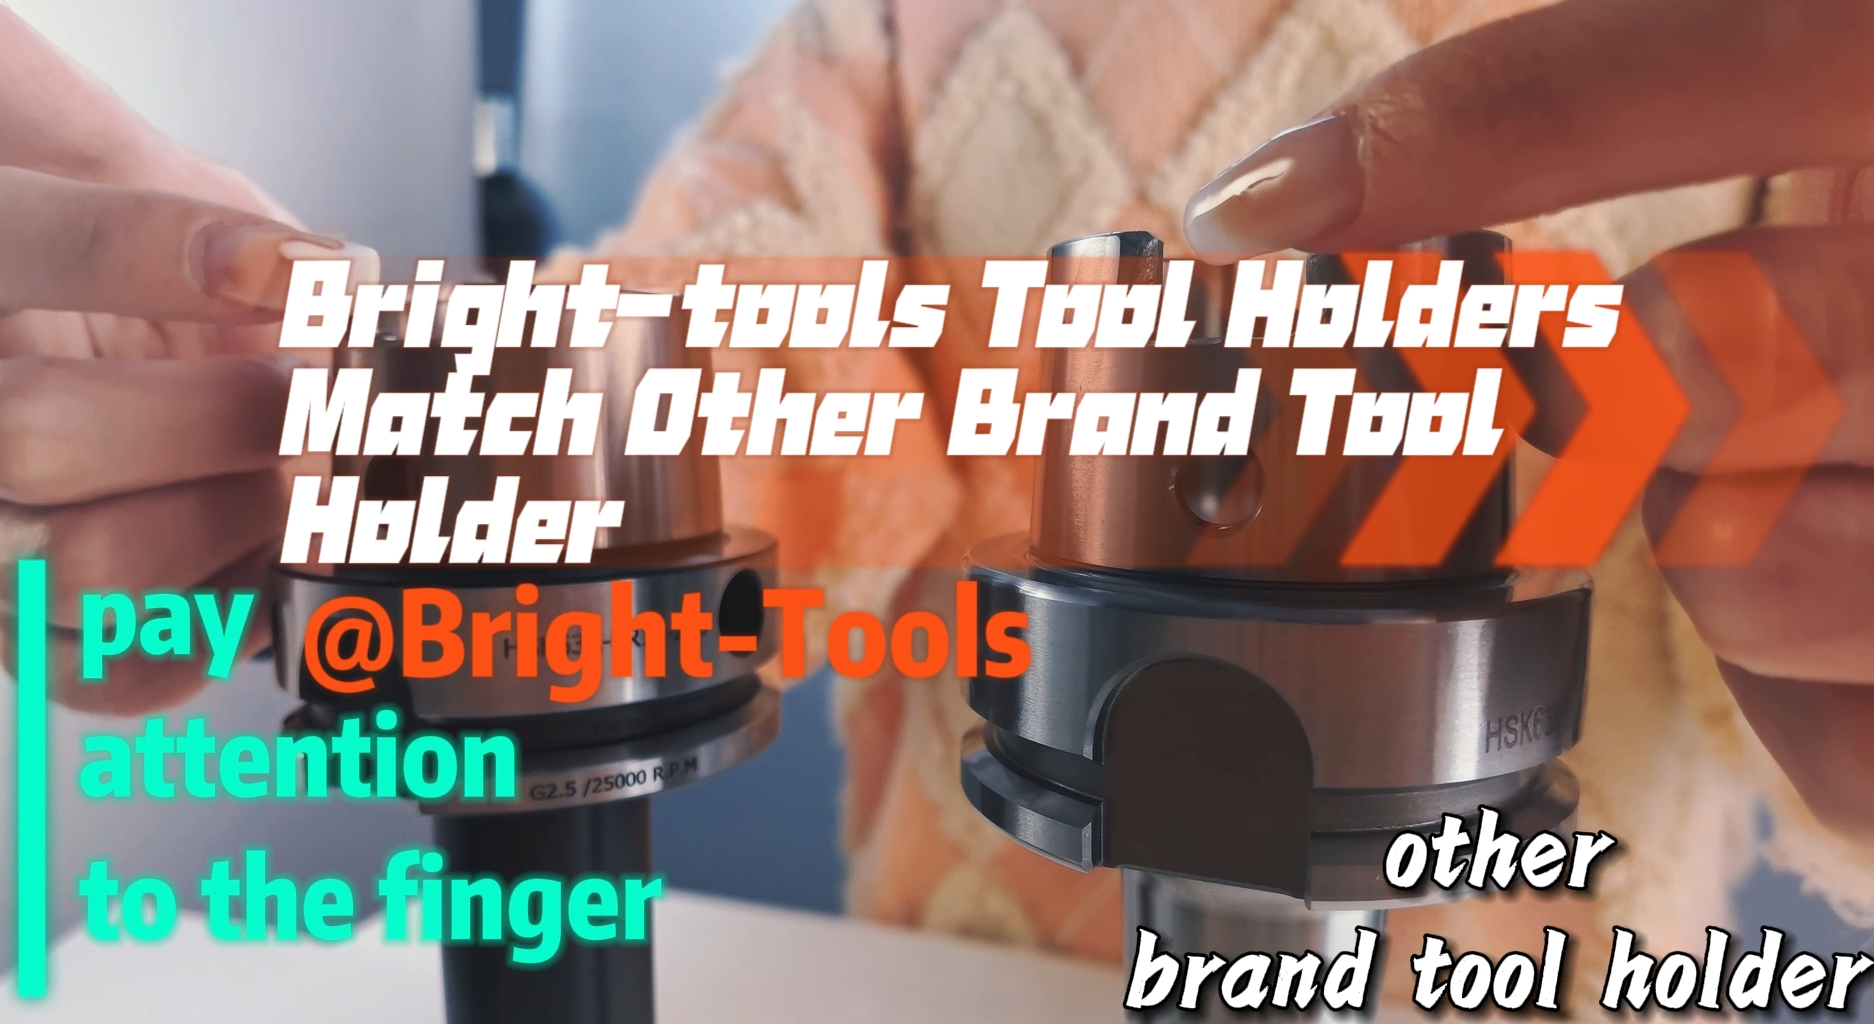 Portautensili Bright-tools abbinati a altri portautensili di marca